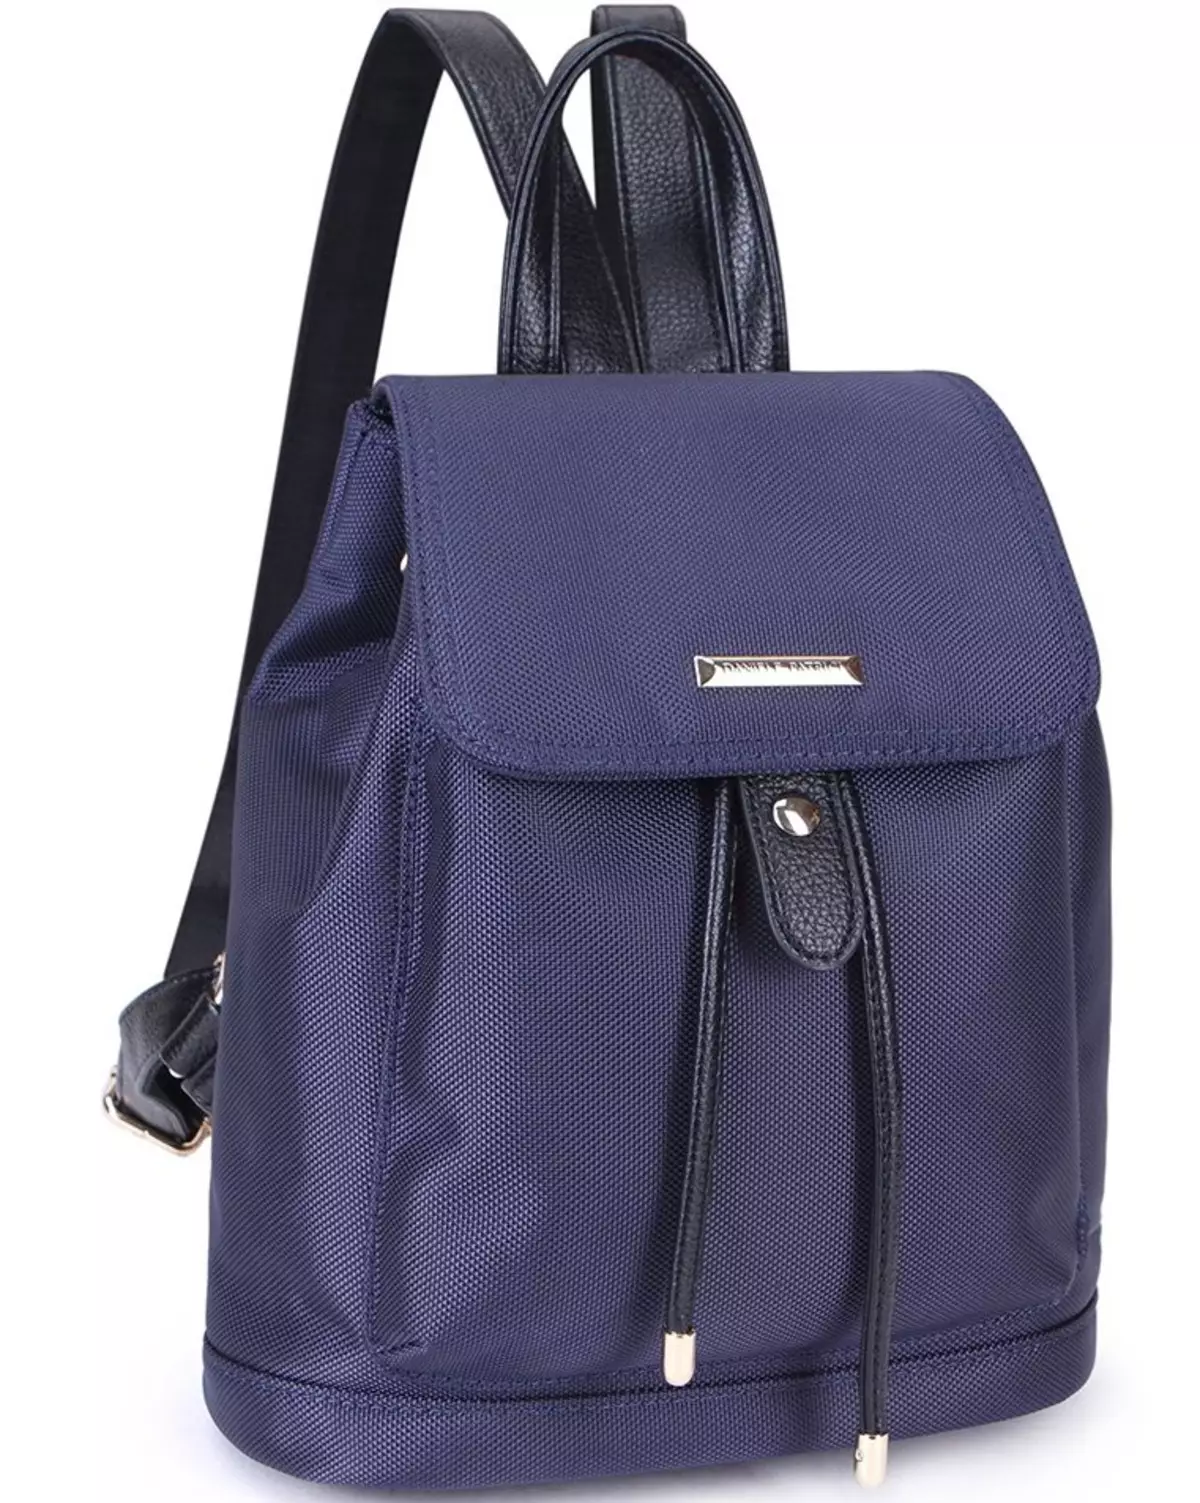 Рюкзаки Kari: огляд жіночих моделей, шкільні рюкзаки для дівчаток і хлопчиків, білі і чорні рюкзаки інших брендів, представлених в магазині 15431_11